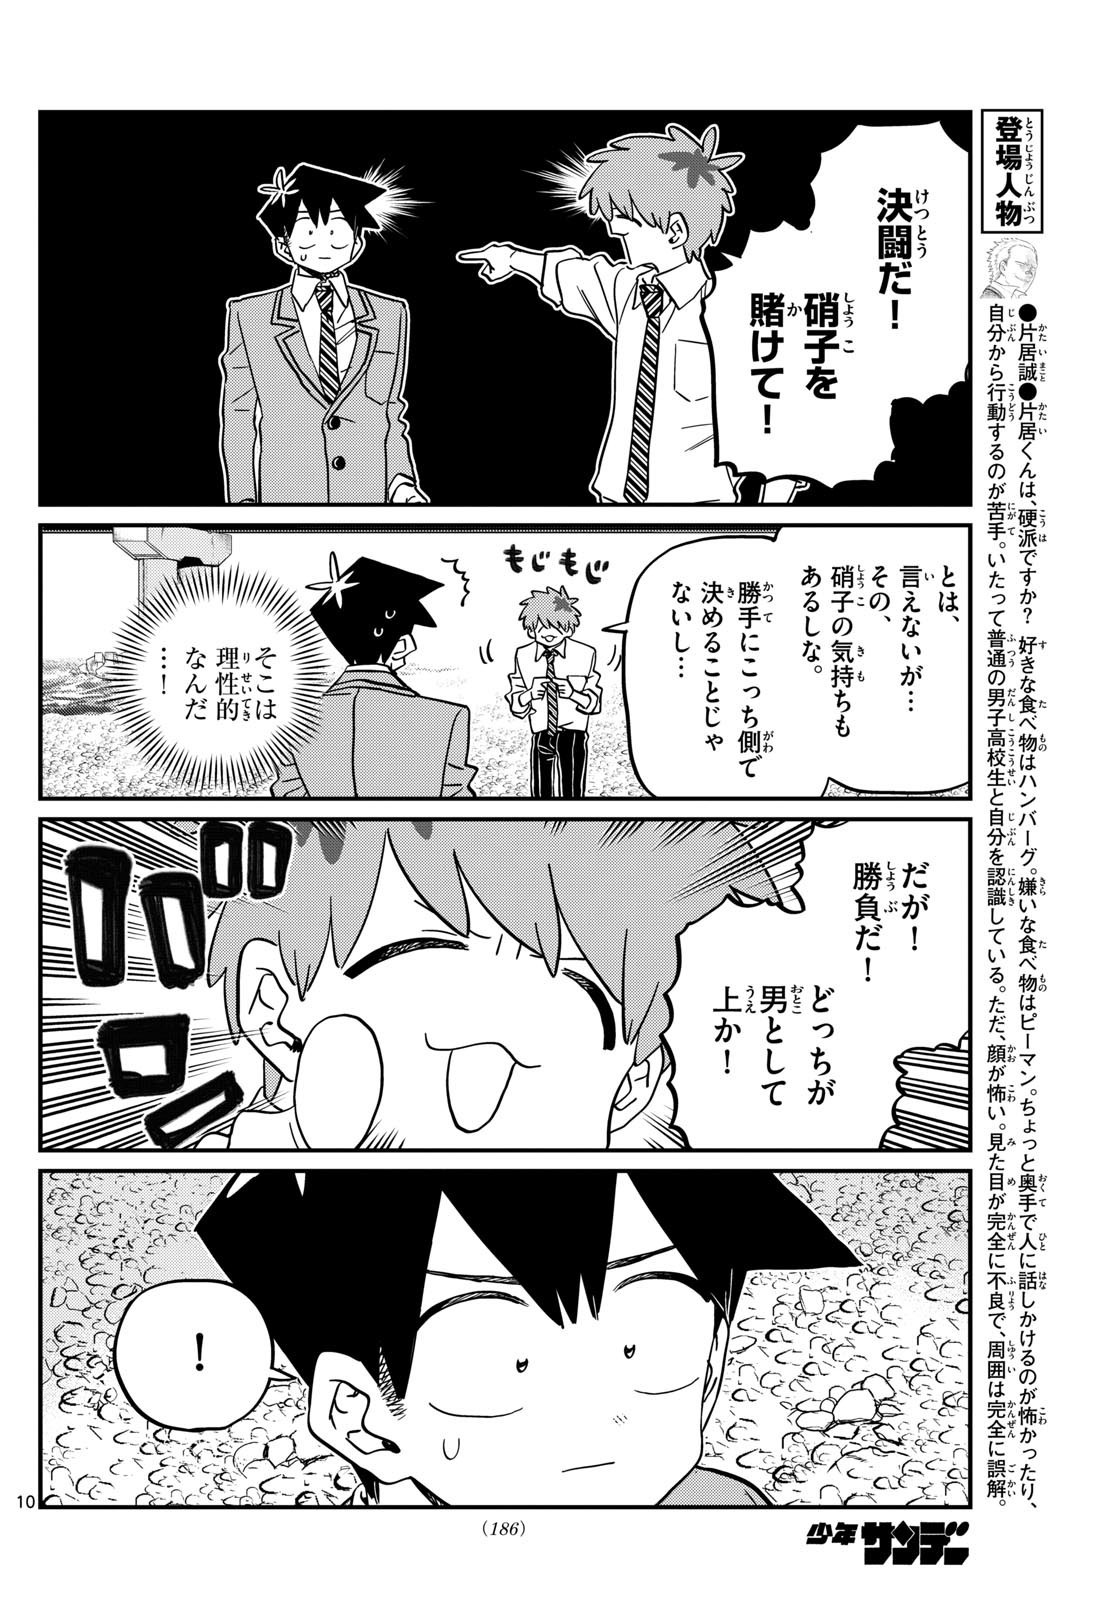 Komi-san wa Komyushou Desu - Chapter 471 - Page 5